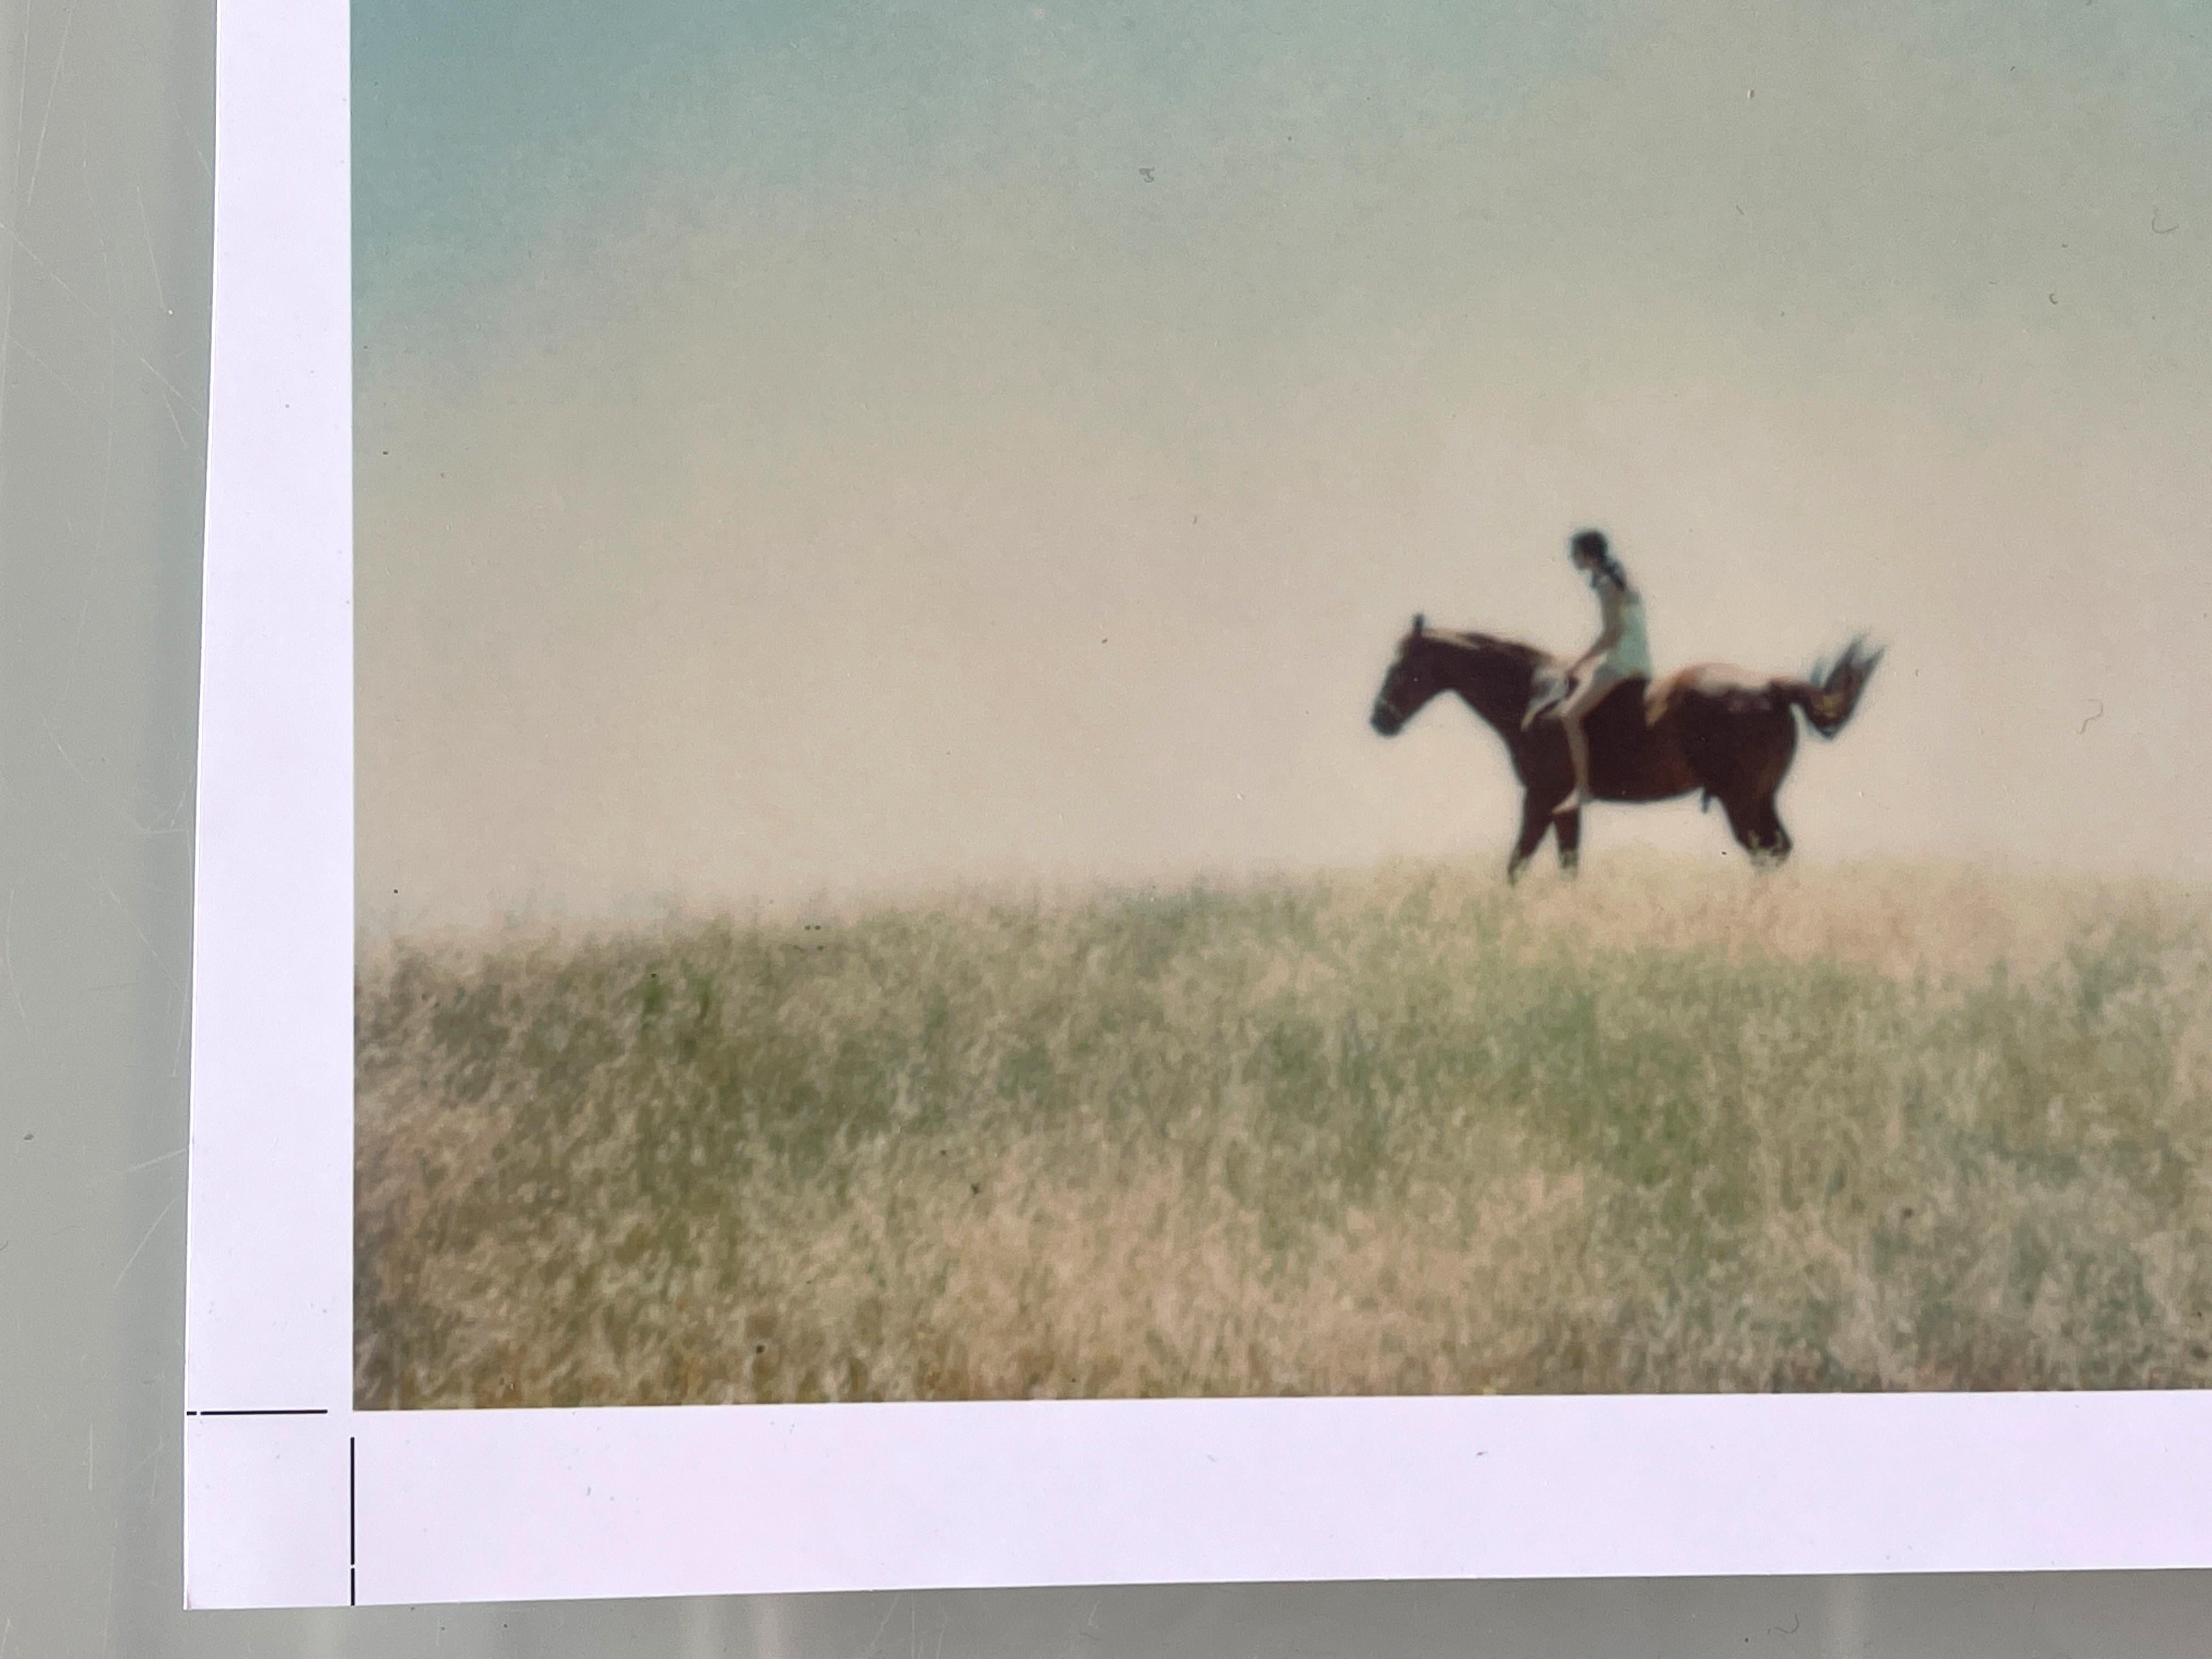 Renée''s Dream (Days of Heaven), Nr. 7 - Zeitgenössisch, Polaroid, Pferd, Frauen (Grau), Landscape Photograph, von Stefanie Schneider